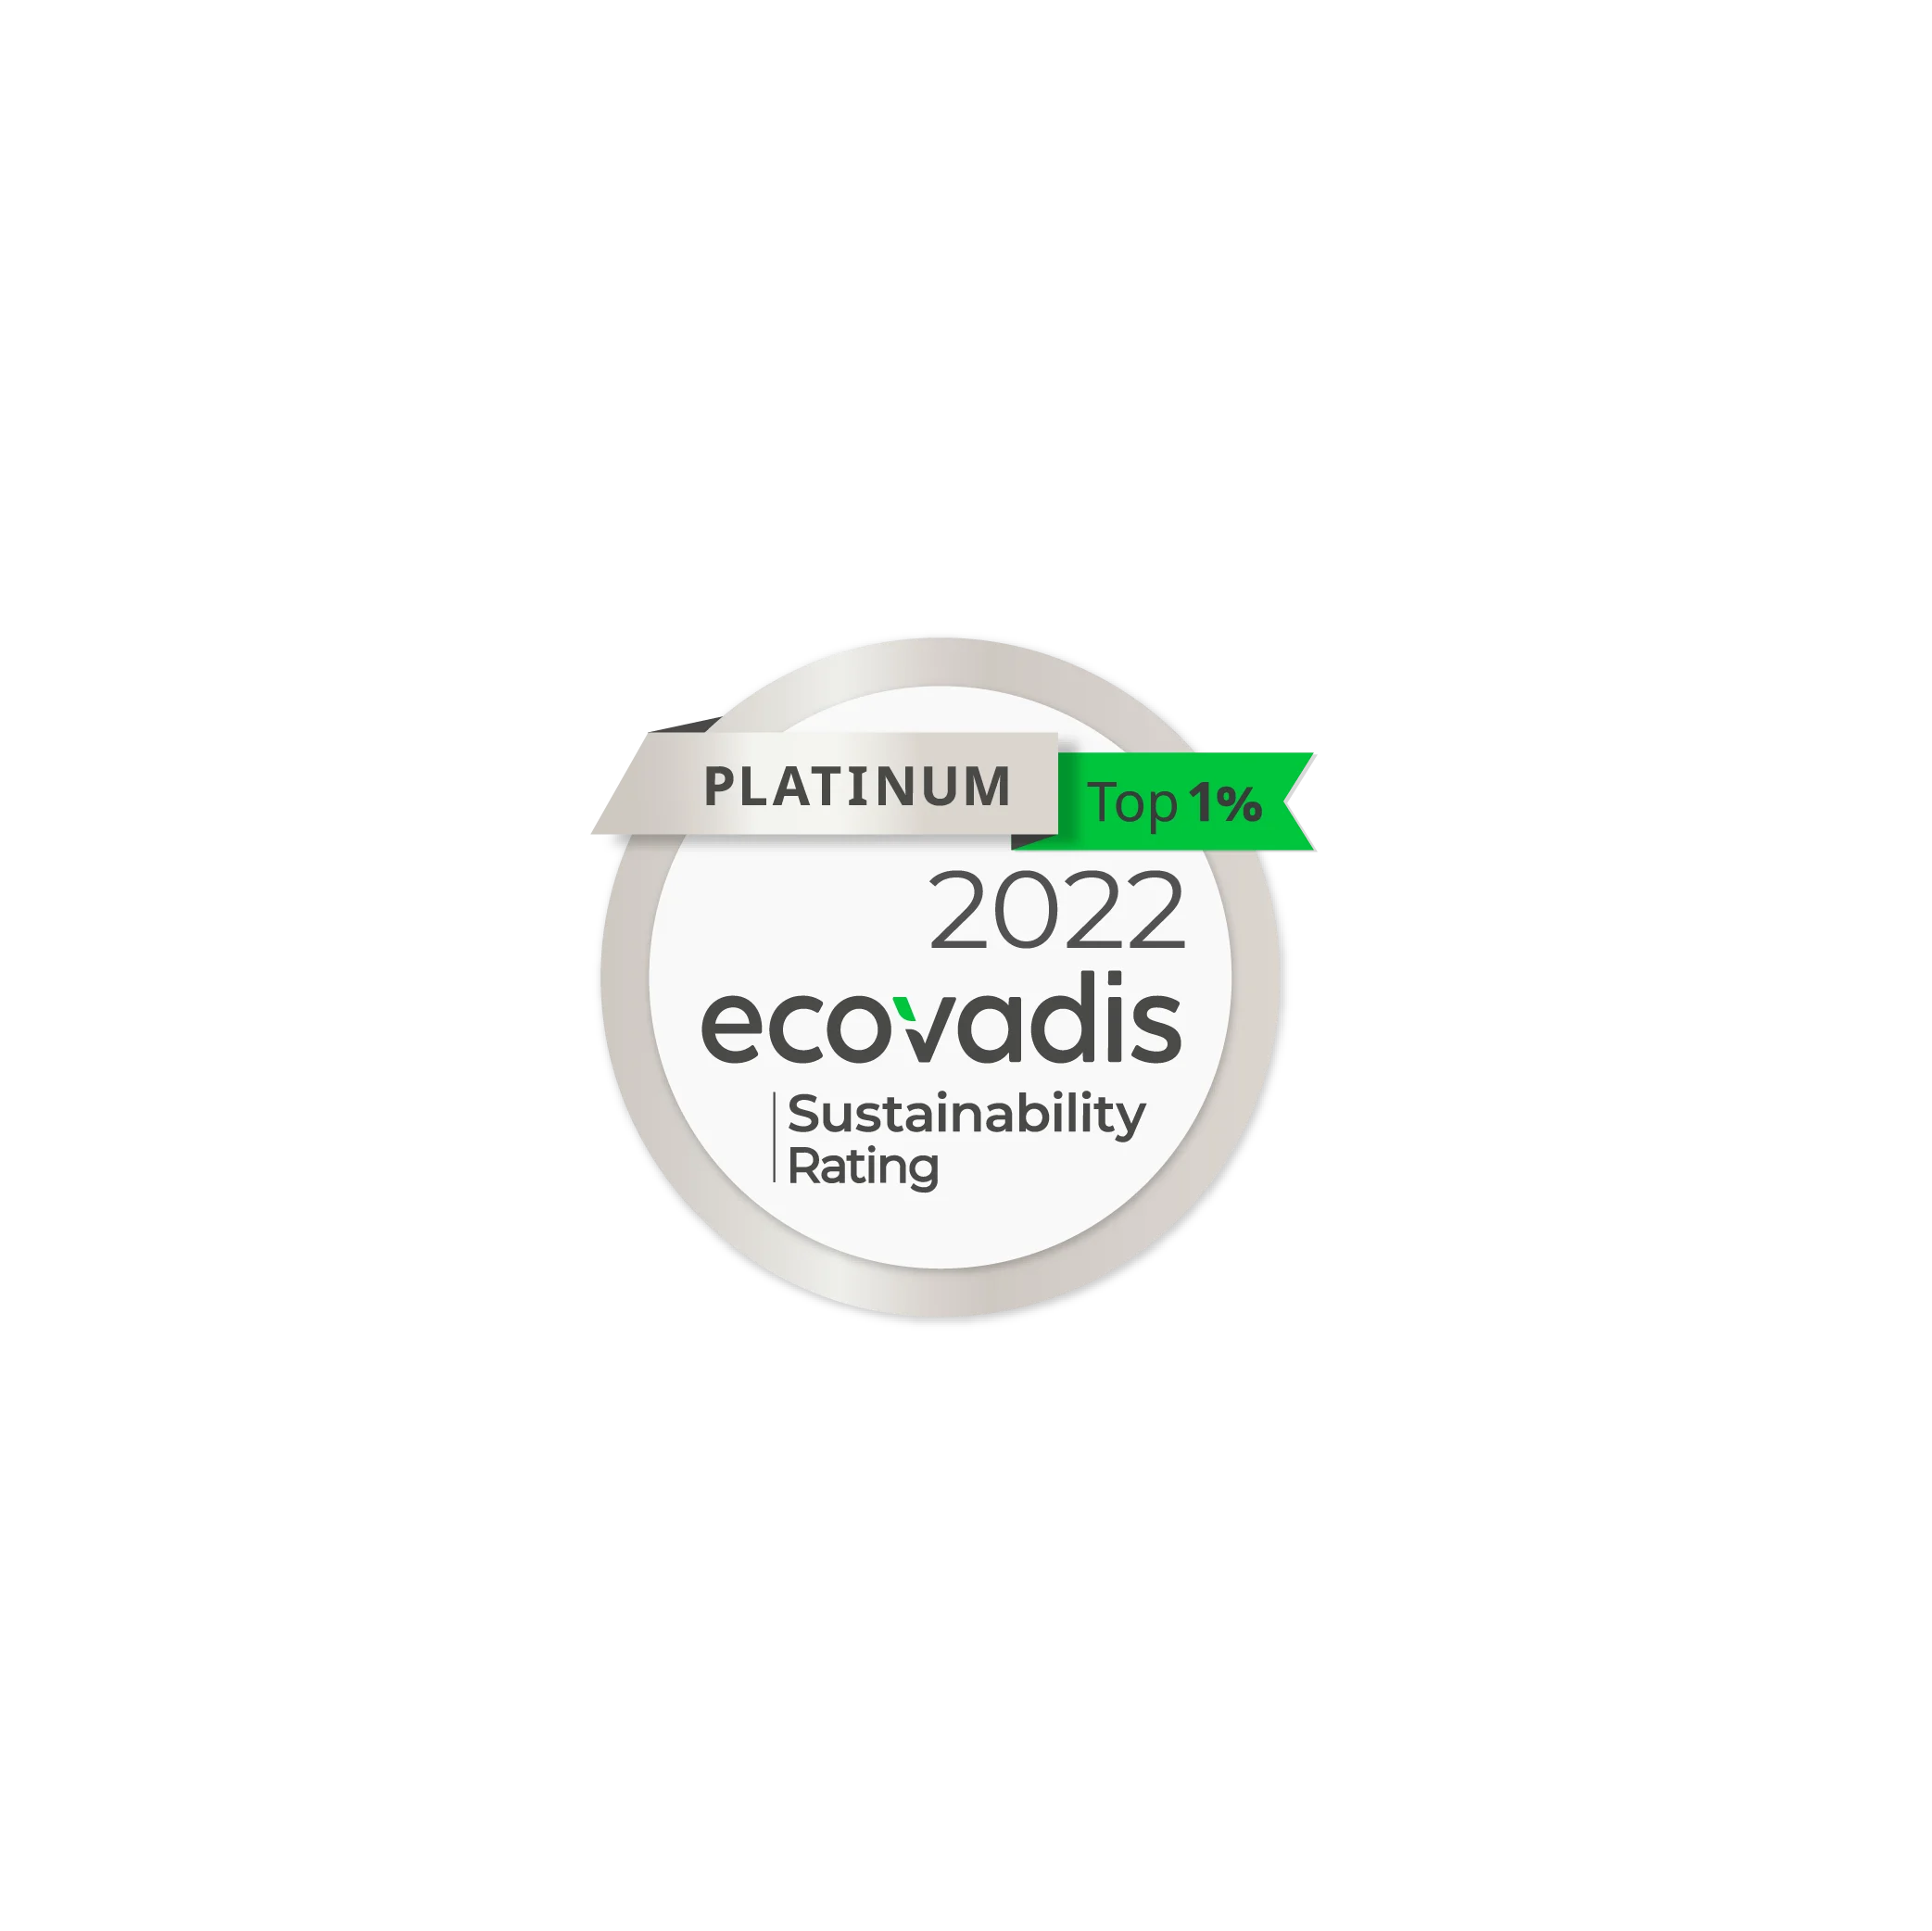 ecovadis sustainability logo 2022